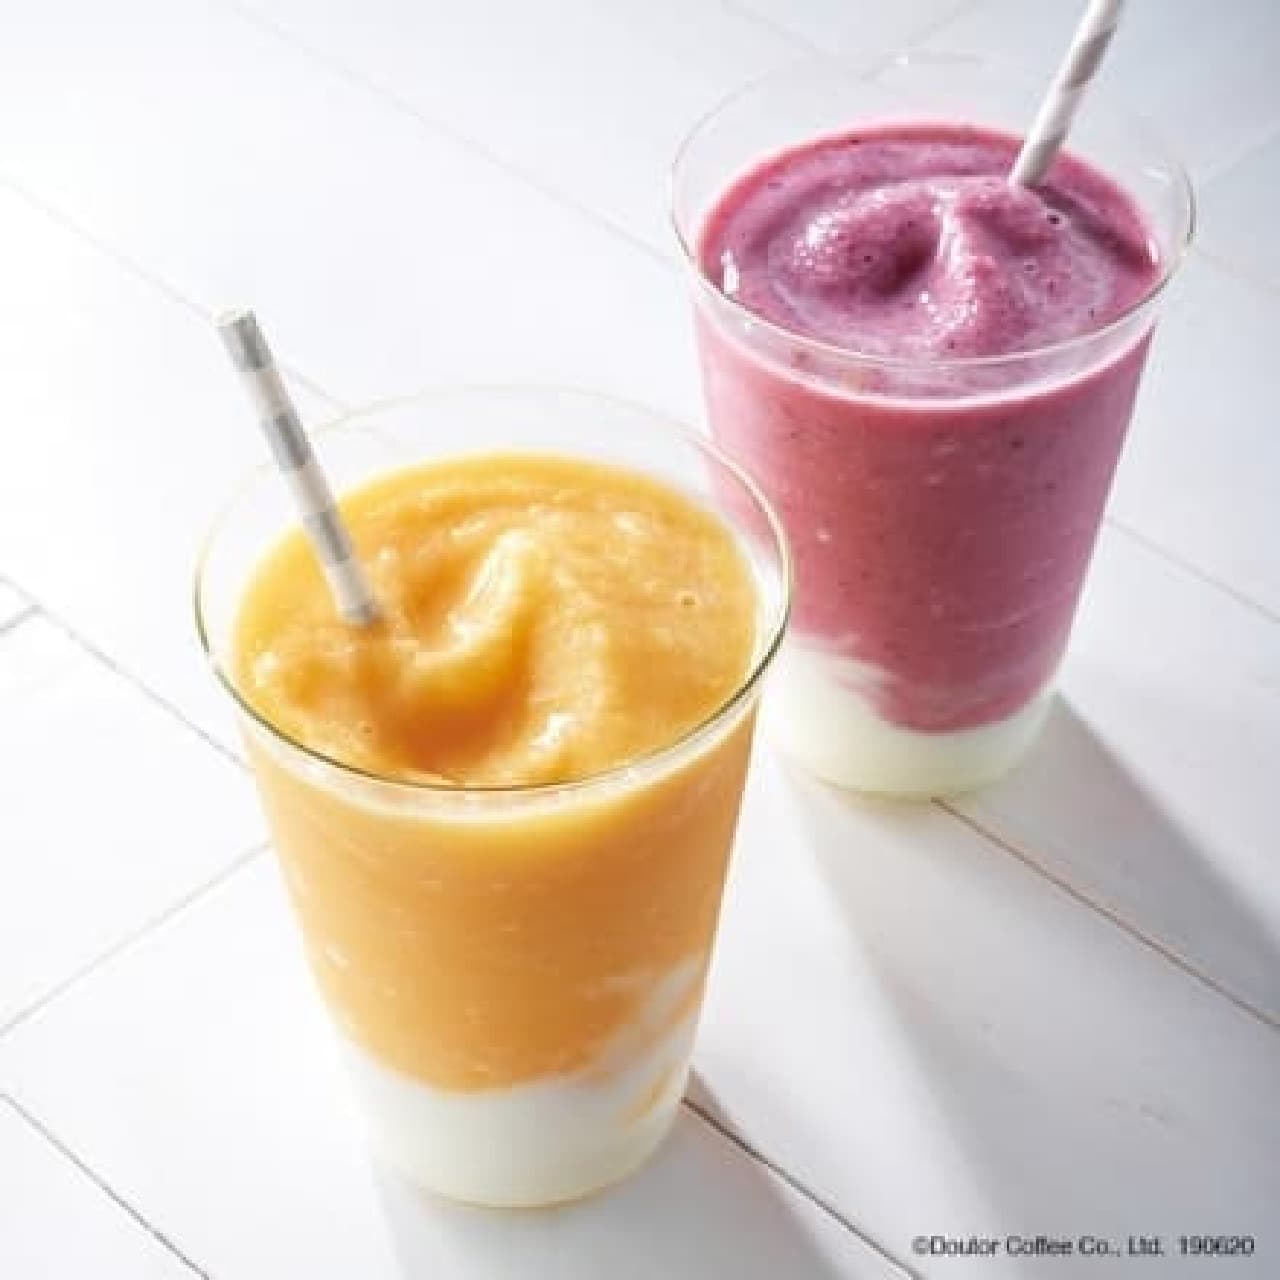 Excelsior Cafe "Fruit Smoothie Mango & Yogurt / Mixed Berry & Yogurt"